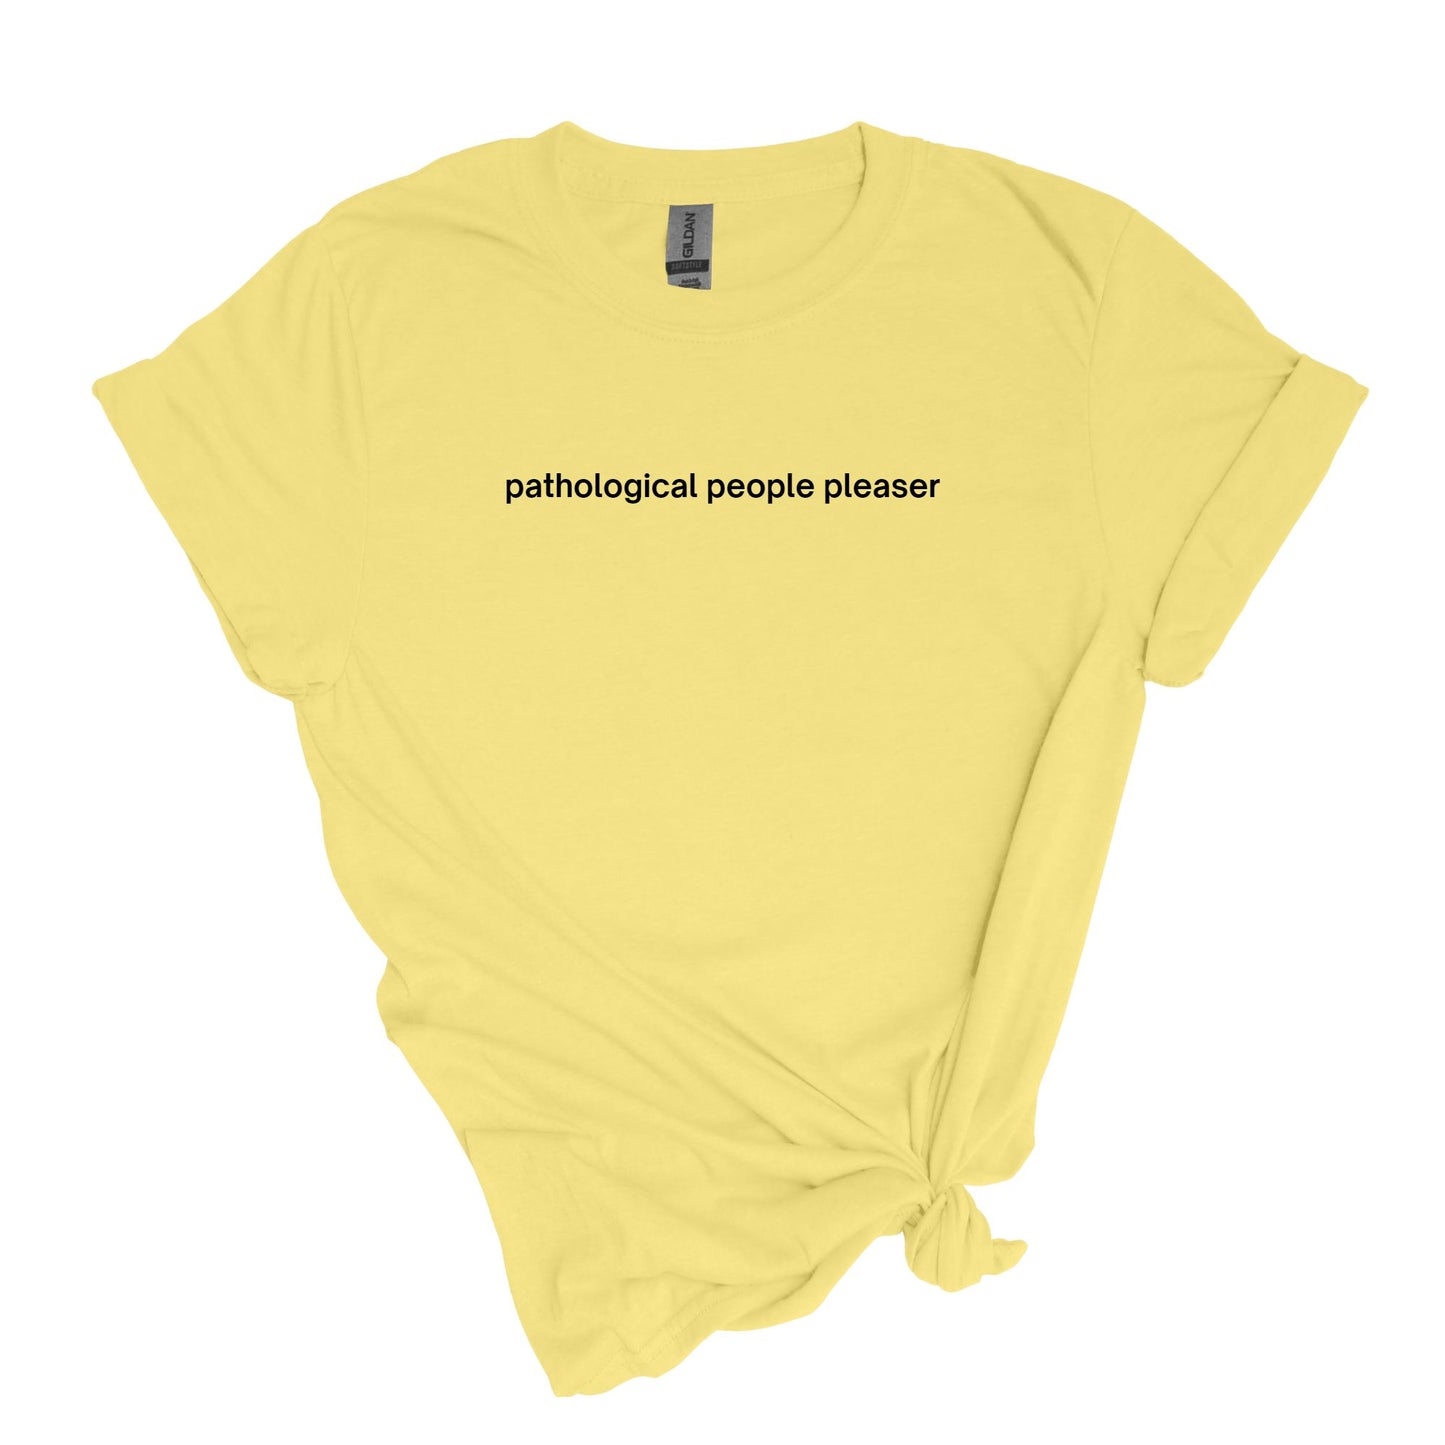 pathological people pleaser - sarcastic, self-descriptive Adult Unisex Soft T-shirt